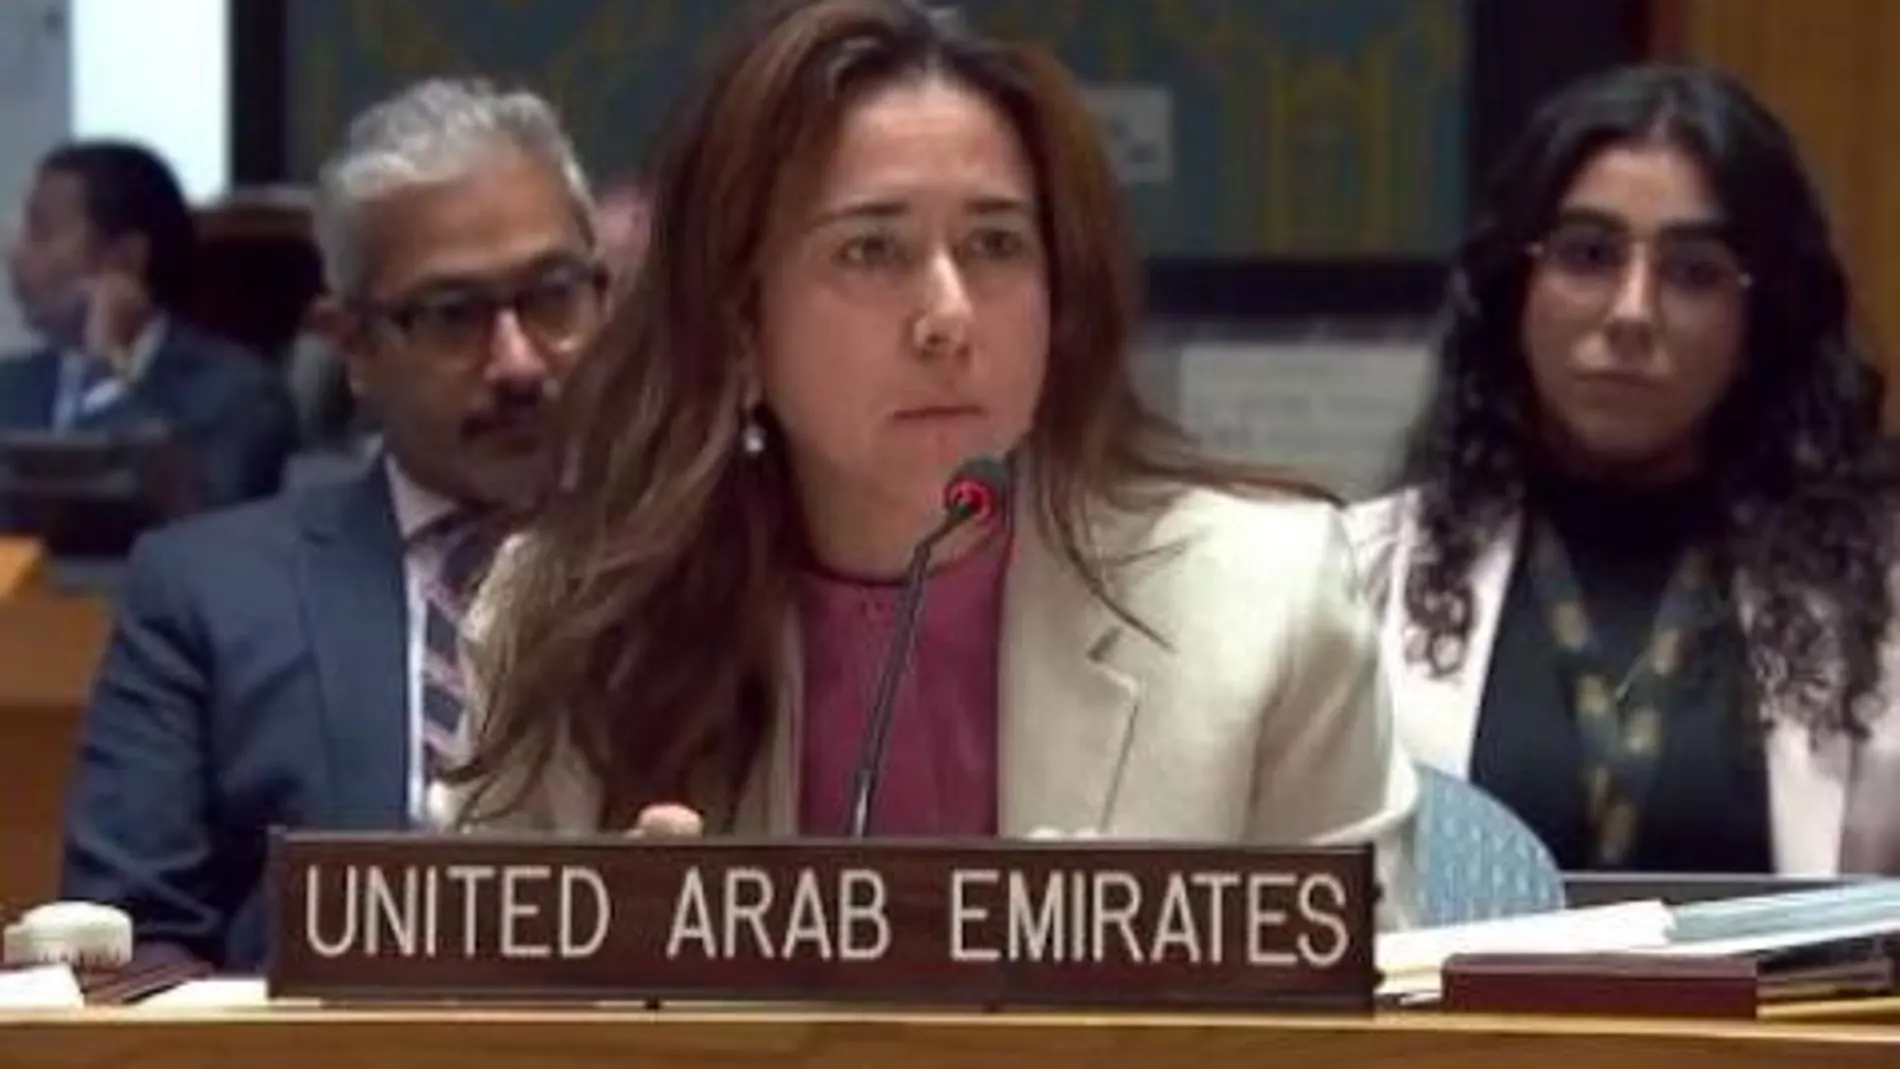 La embajadora de los EAU ante la ONU, Lana Zaki Nusseibeh (Tolo News)